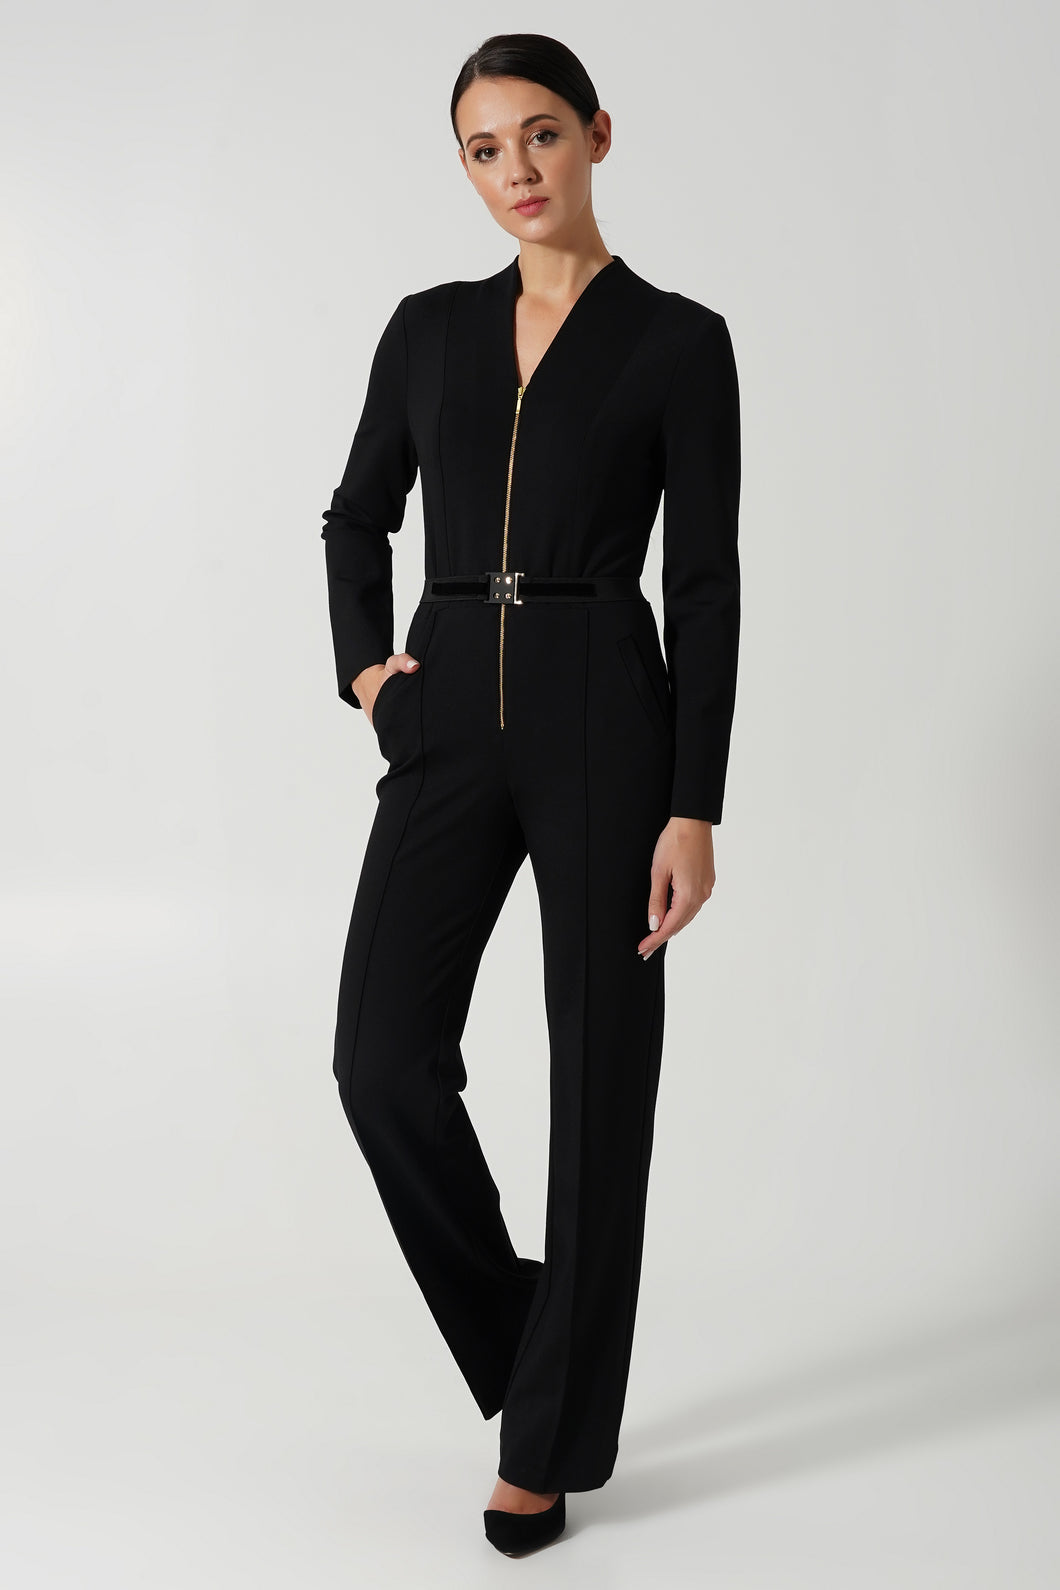 Black formal jumpsuit